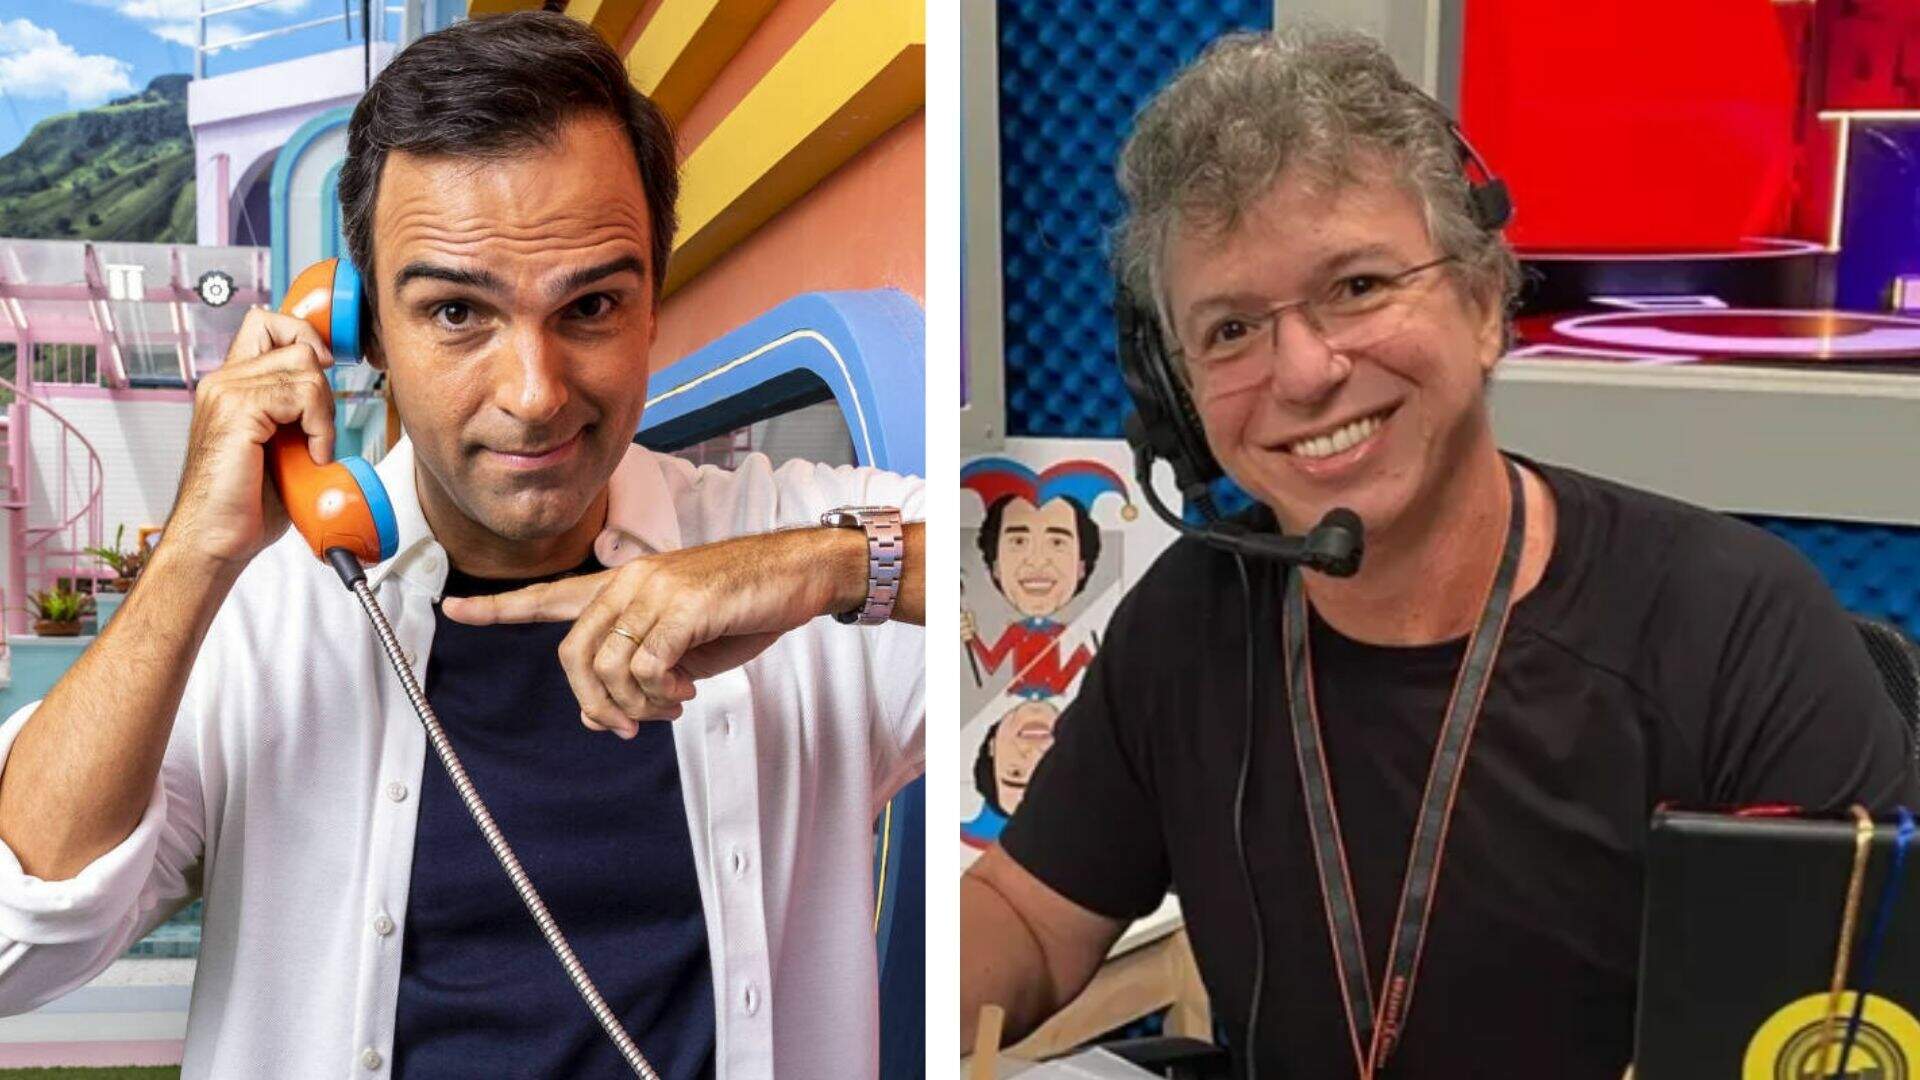 Pela primeira vez, Boninho deixa escapar novidade exclusiva sobre Big Fone: “Revelou demais!” - Metropolitana FM